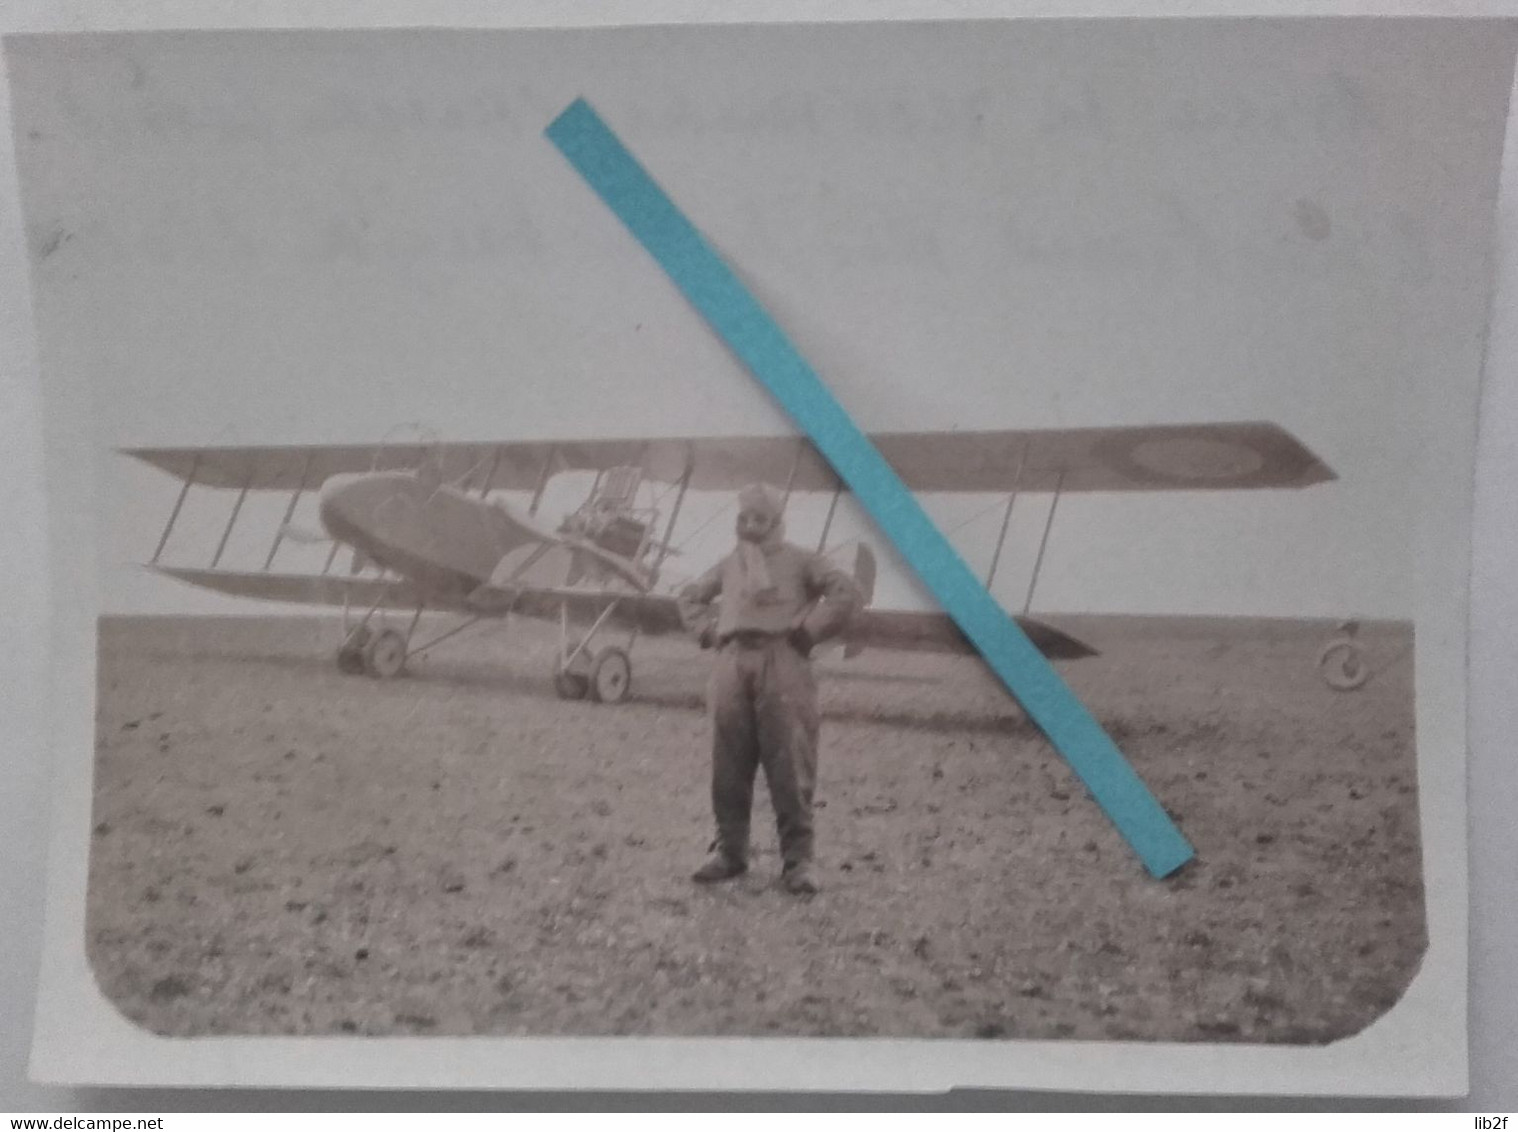 1918 Viefvillers Montdidier Letord Bimoteur Reconnaissance Aérodrome Avion Hispano-suiza 1914-1918 WW1 14-18  Photo - Guerre, Militaire